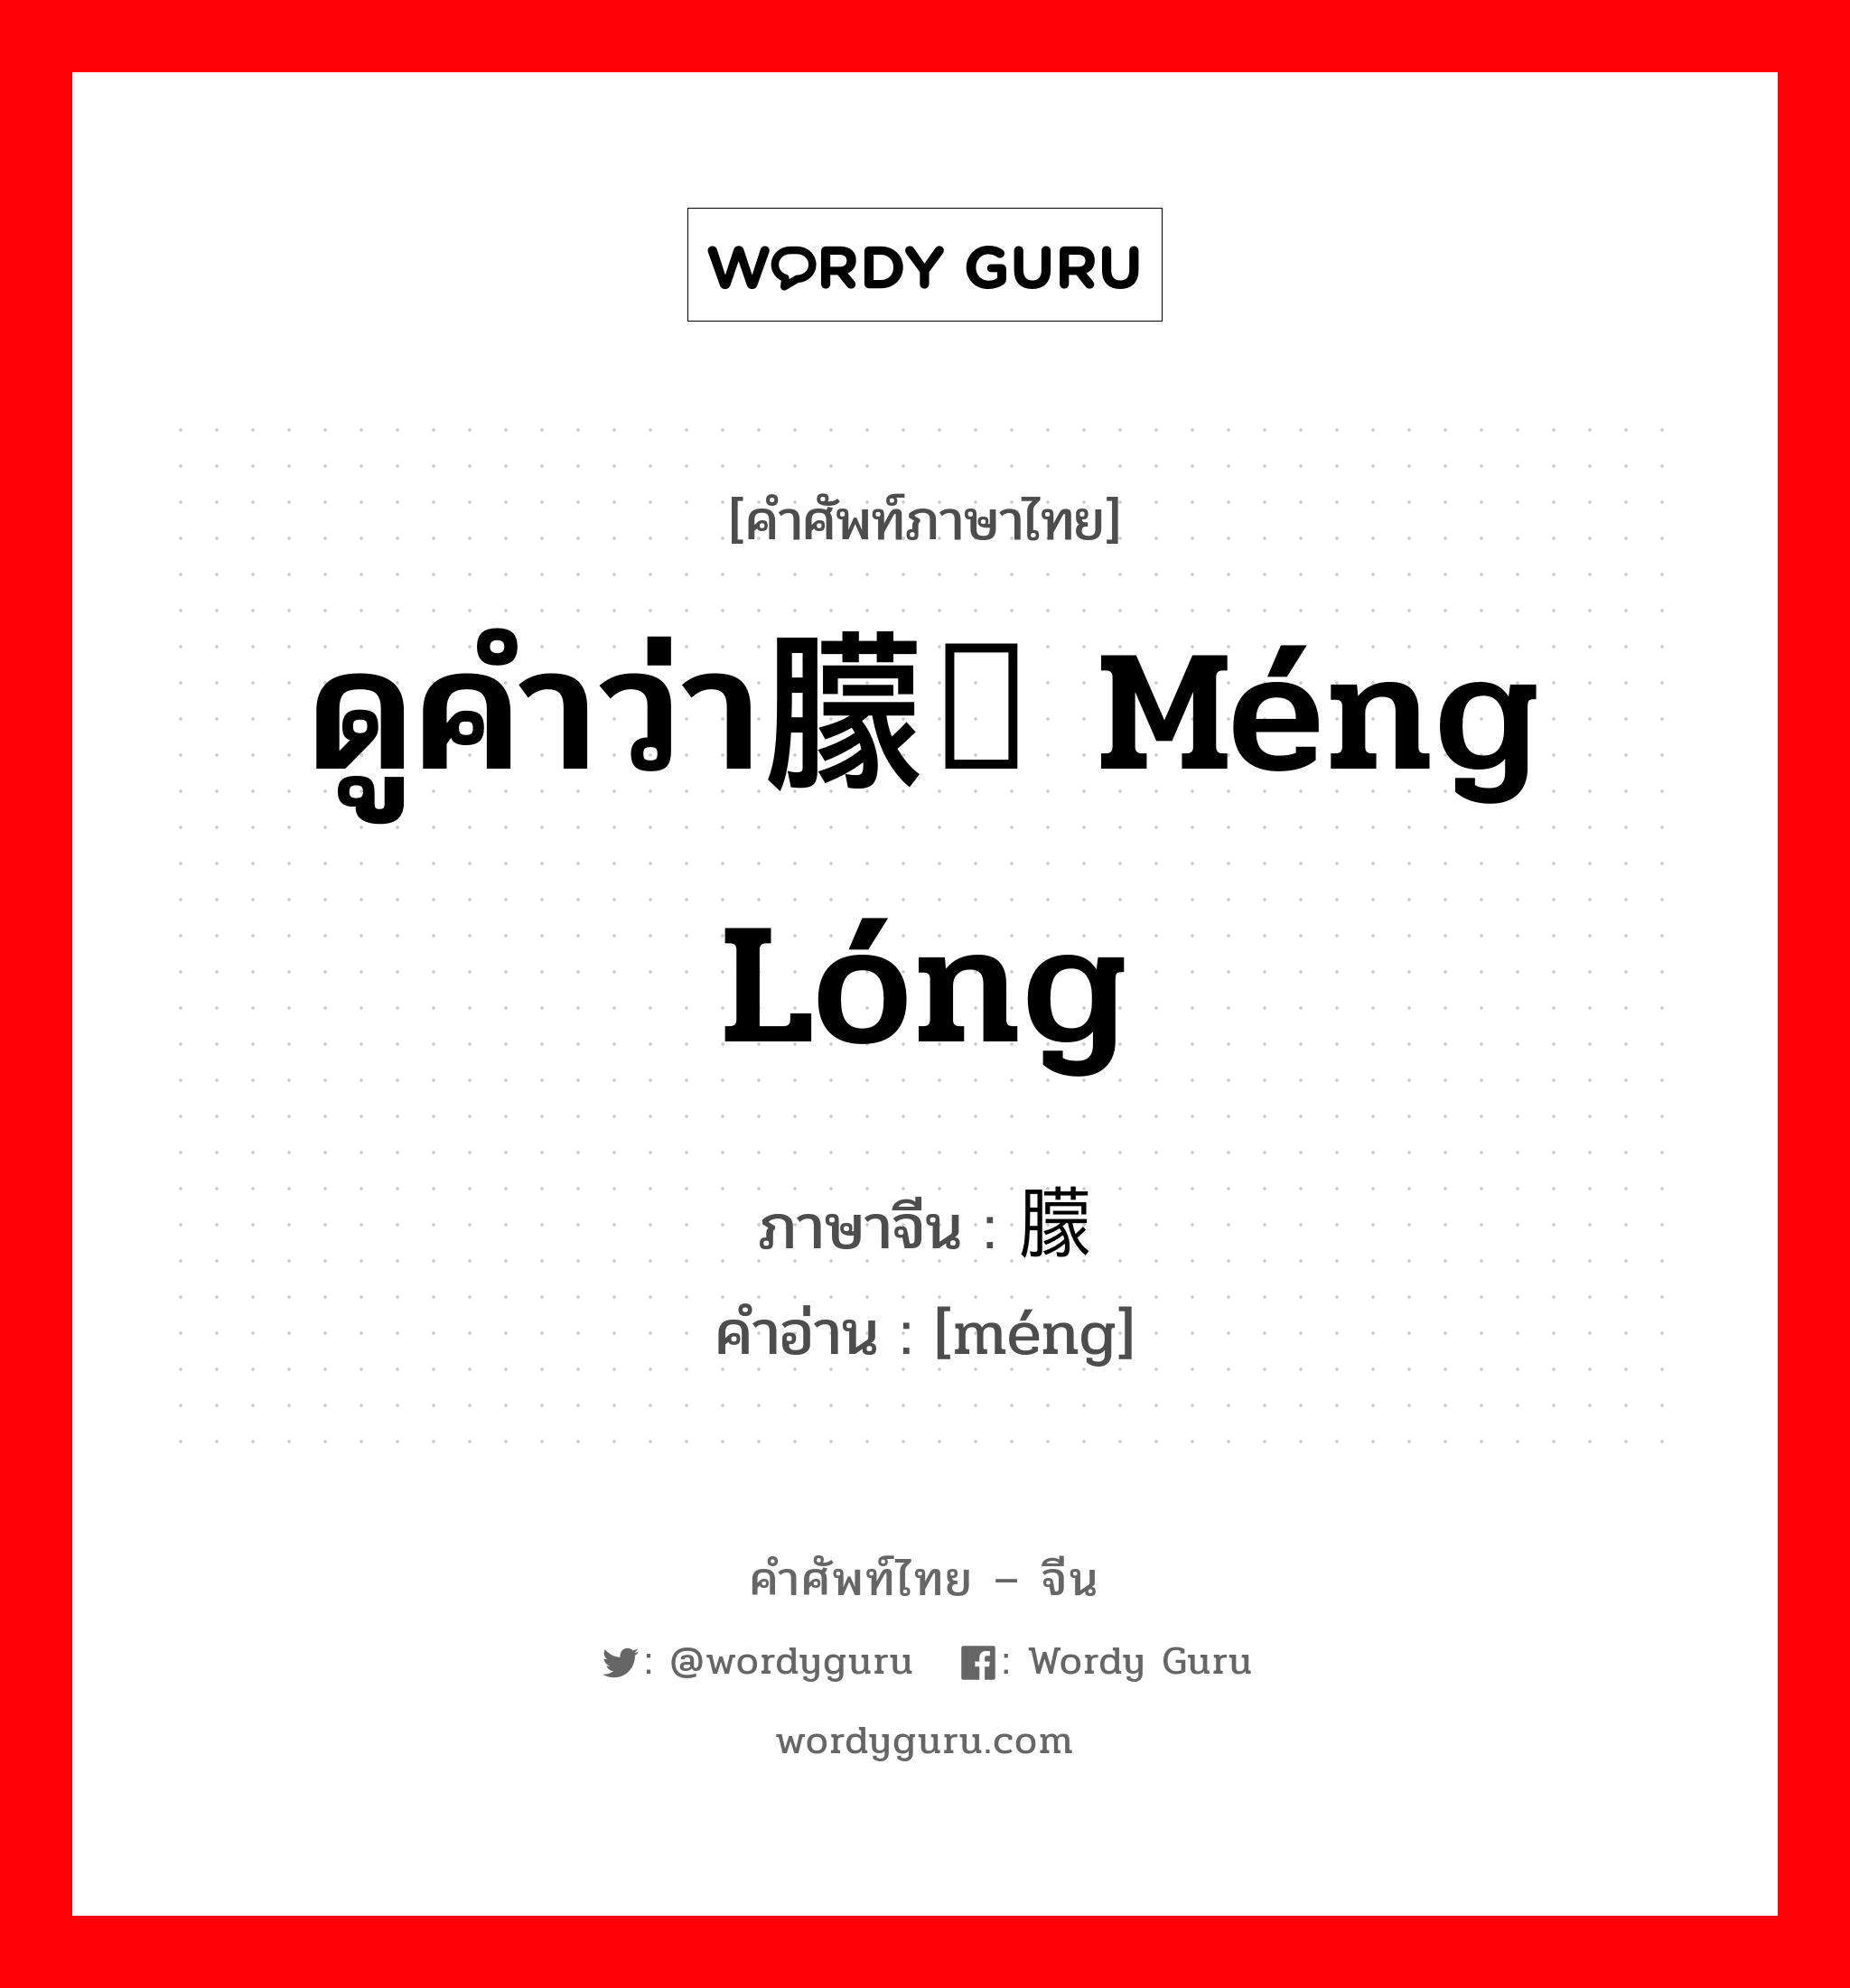 ดูคำว่า朦胧 méng lóng ภาษาจีนคืออะไร, คำศัพท์ภาษาไทย - จีน ดูคำว่า朦胧 méng lóng ภาษาจีน 朦 คำอ่าน [méng]